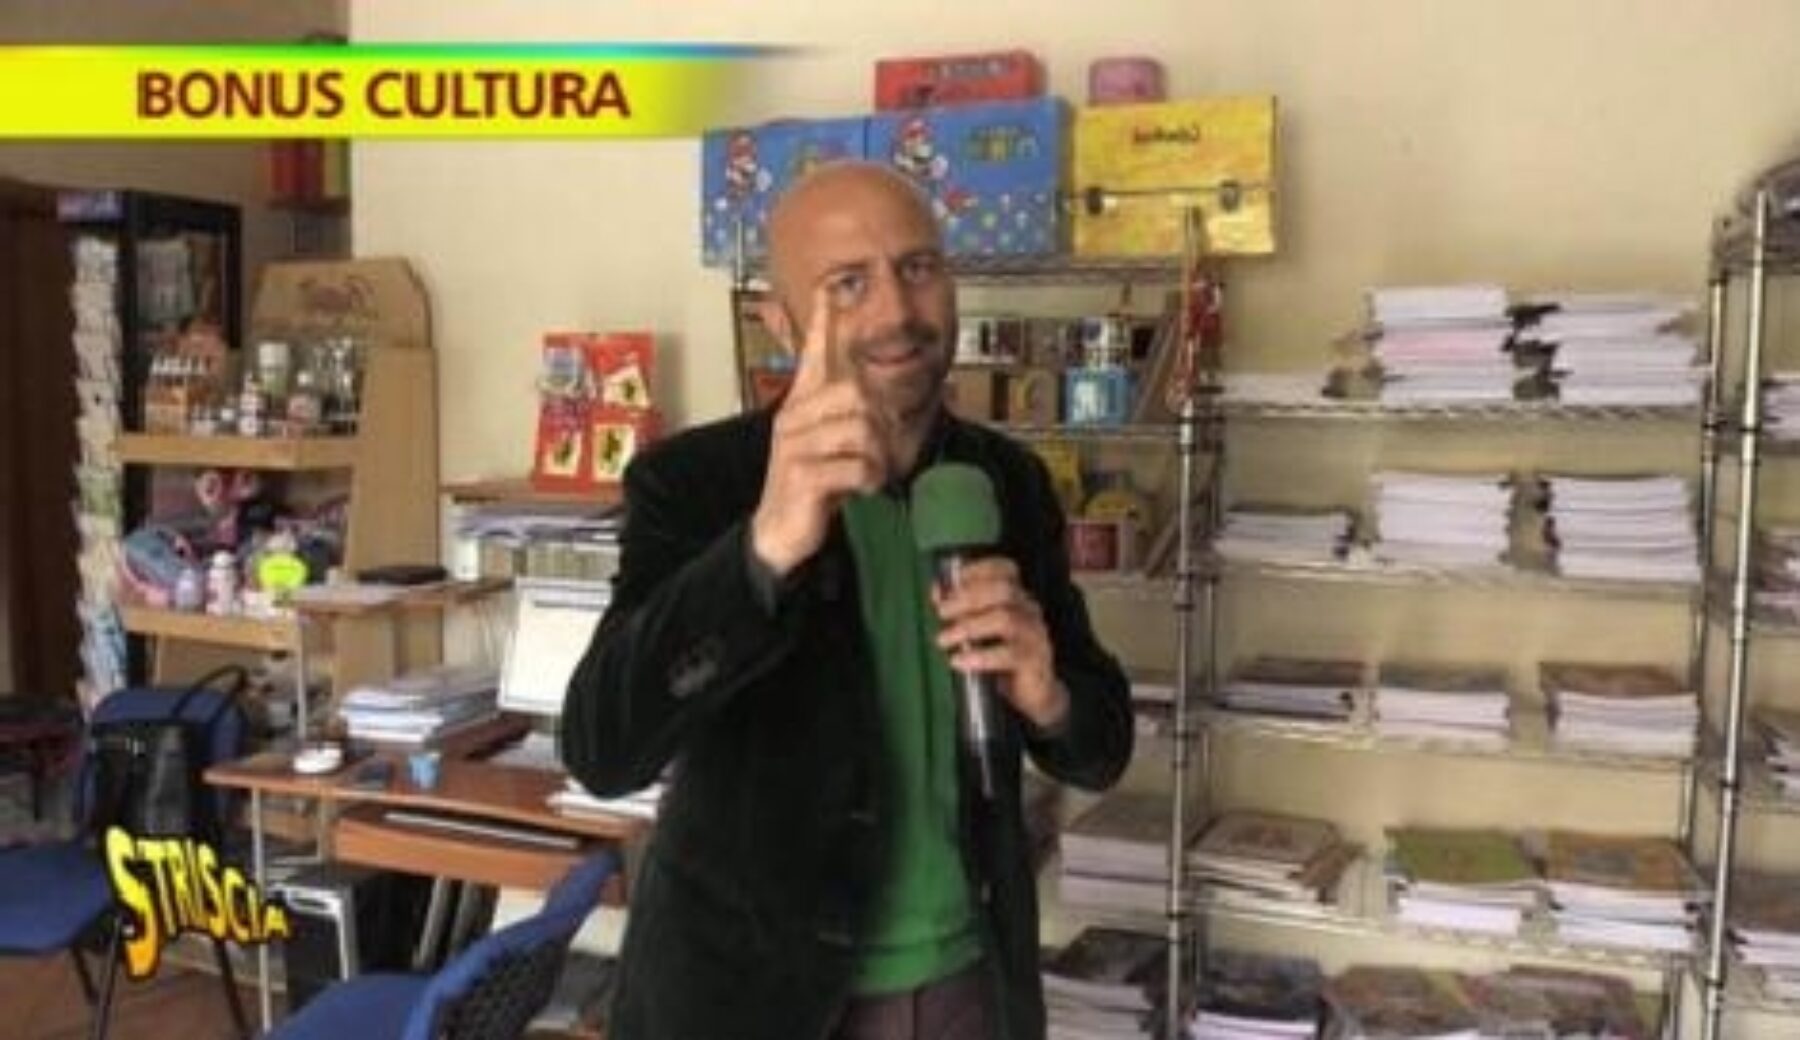 A Striscia la notizia il servizio di Luca Abete sul bonus cultura: niente libri e musei, ragazzi e commercianti si spartiscono i soldi